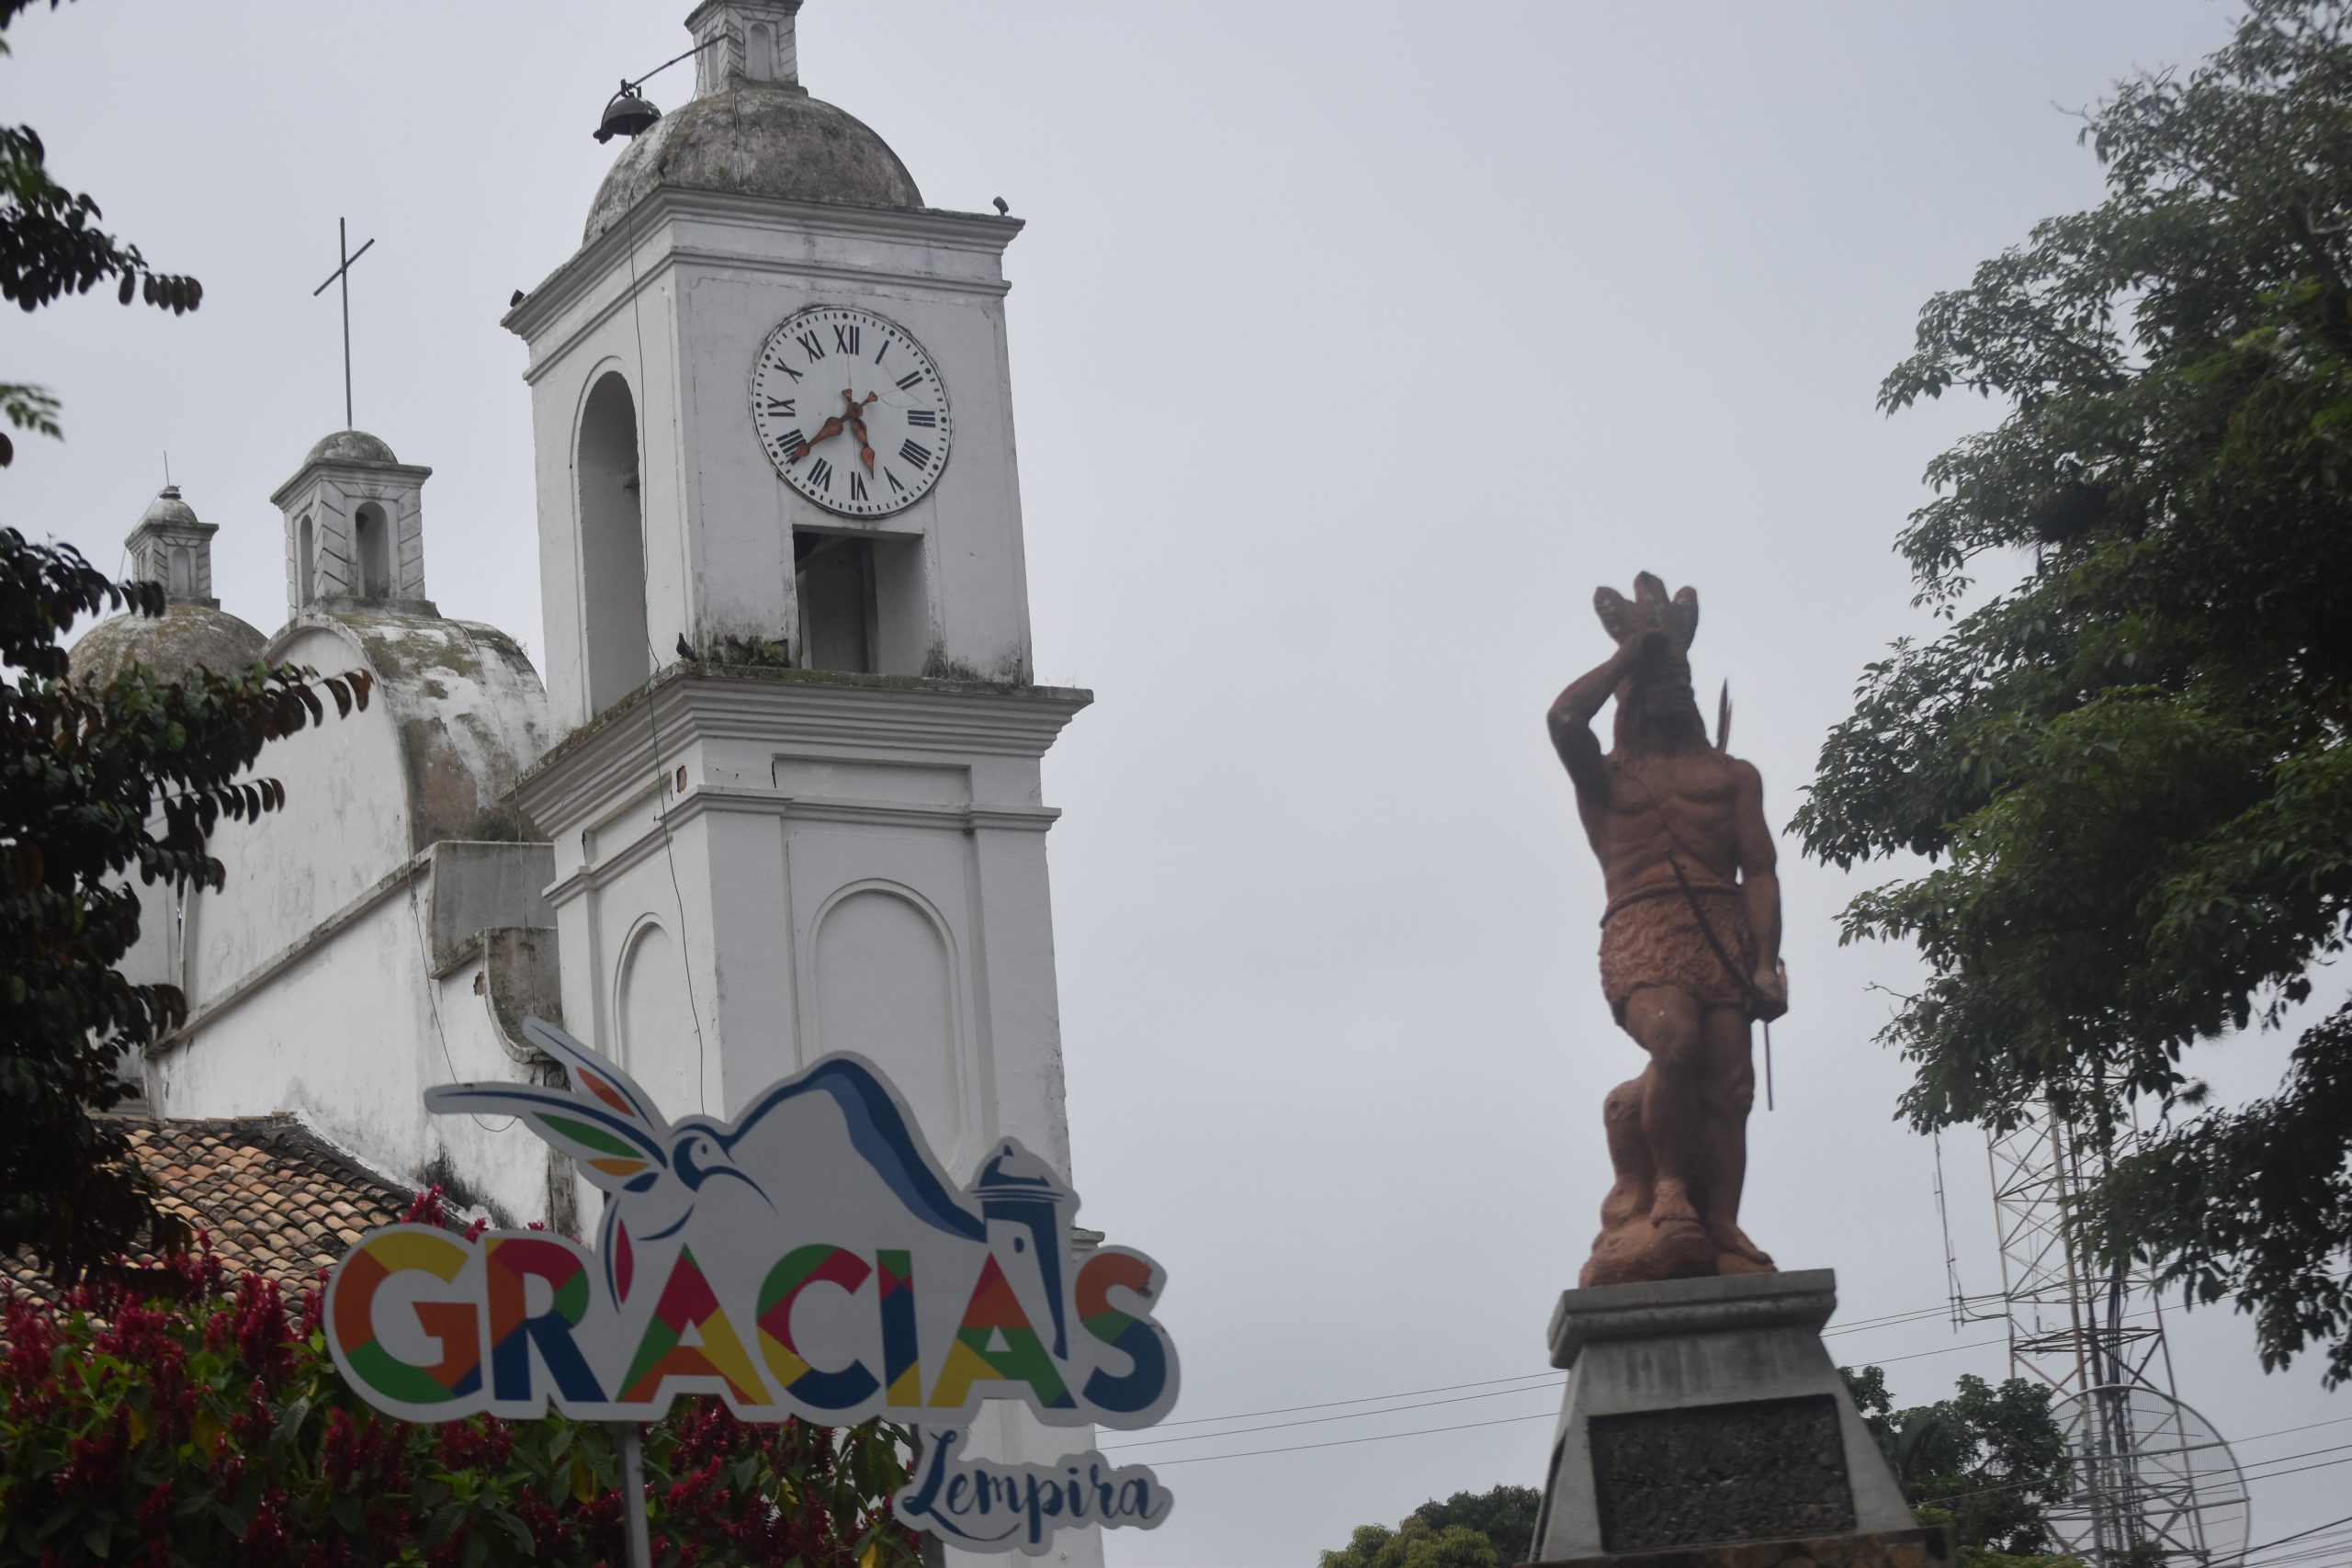 El turismo cultural y de aventura convergen en la ciudad de Gracias, Lempira